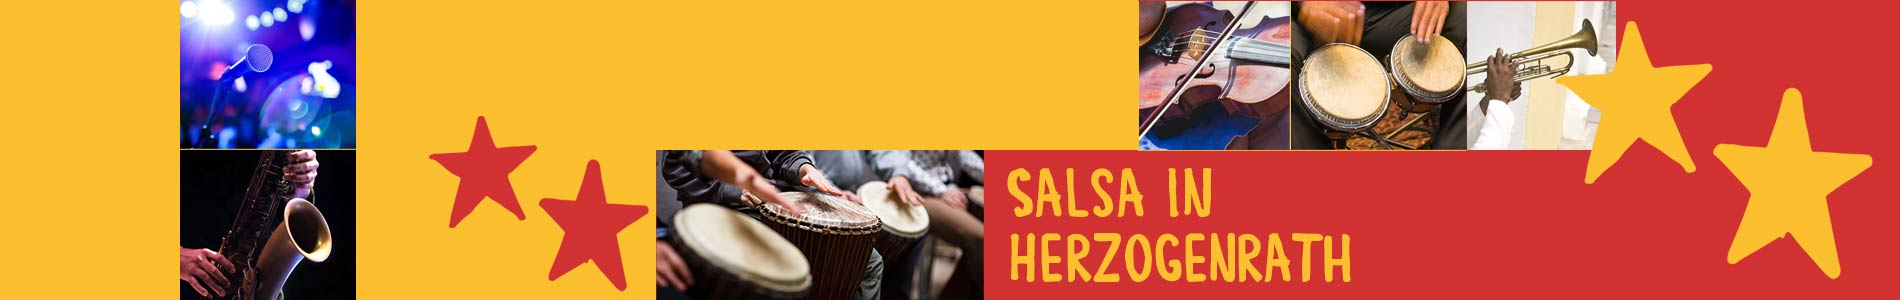 Salsa in Herzogenrath – Salsa lernen und tanzen, Tanzkurse, Partys, Veranstaltungen